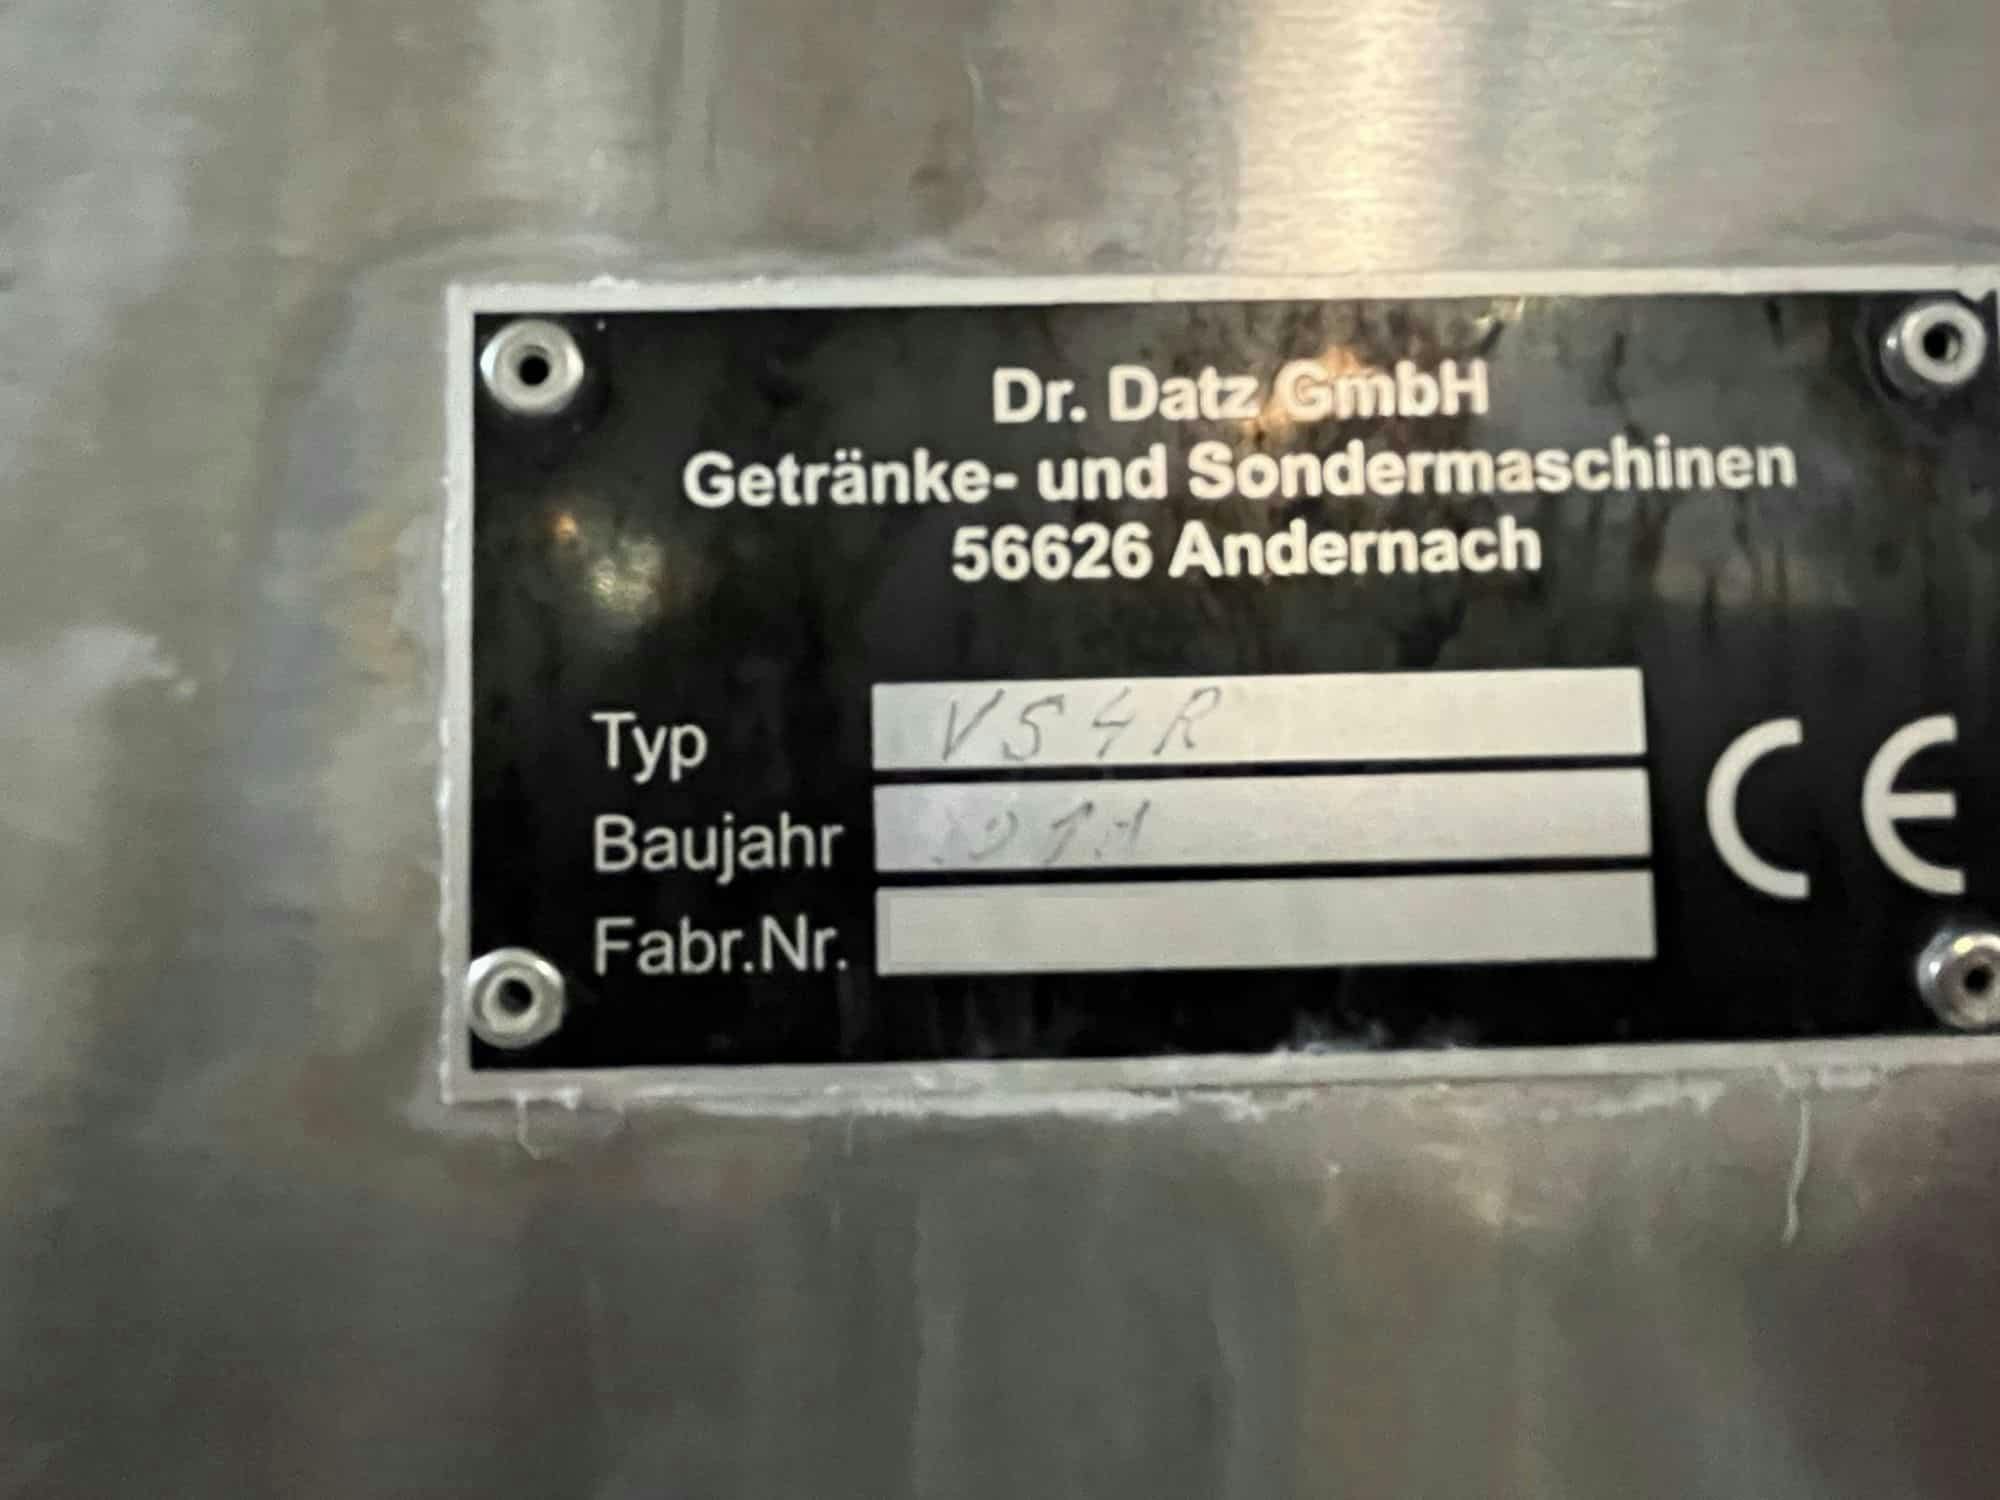 Plaque signalétique of Dr. Datz GmbH Getränke- und Sondermaschinenbau VS4R